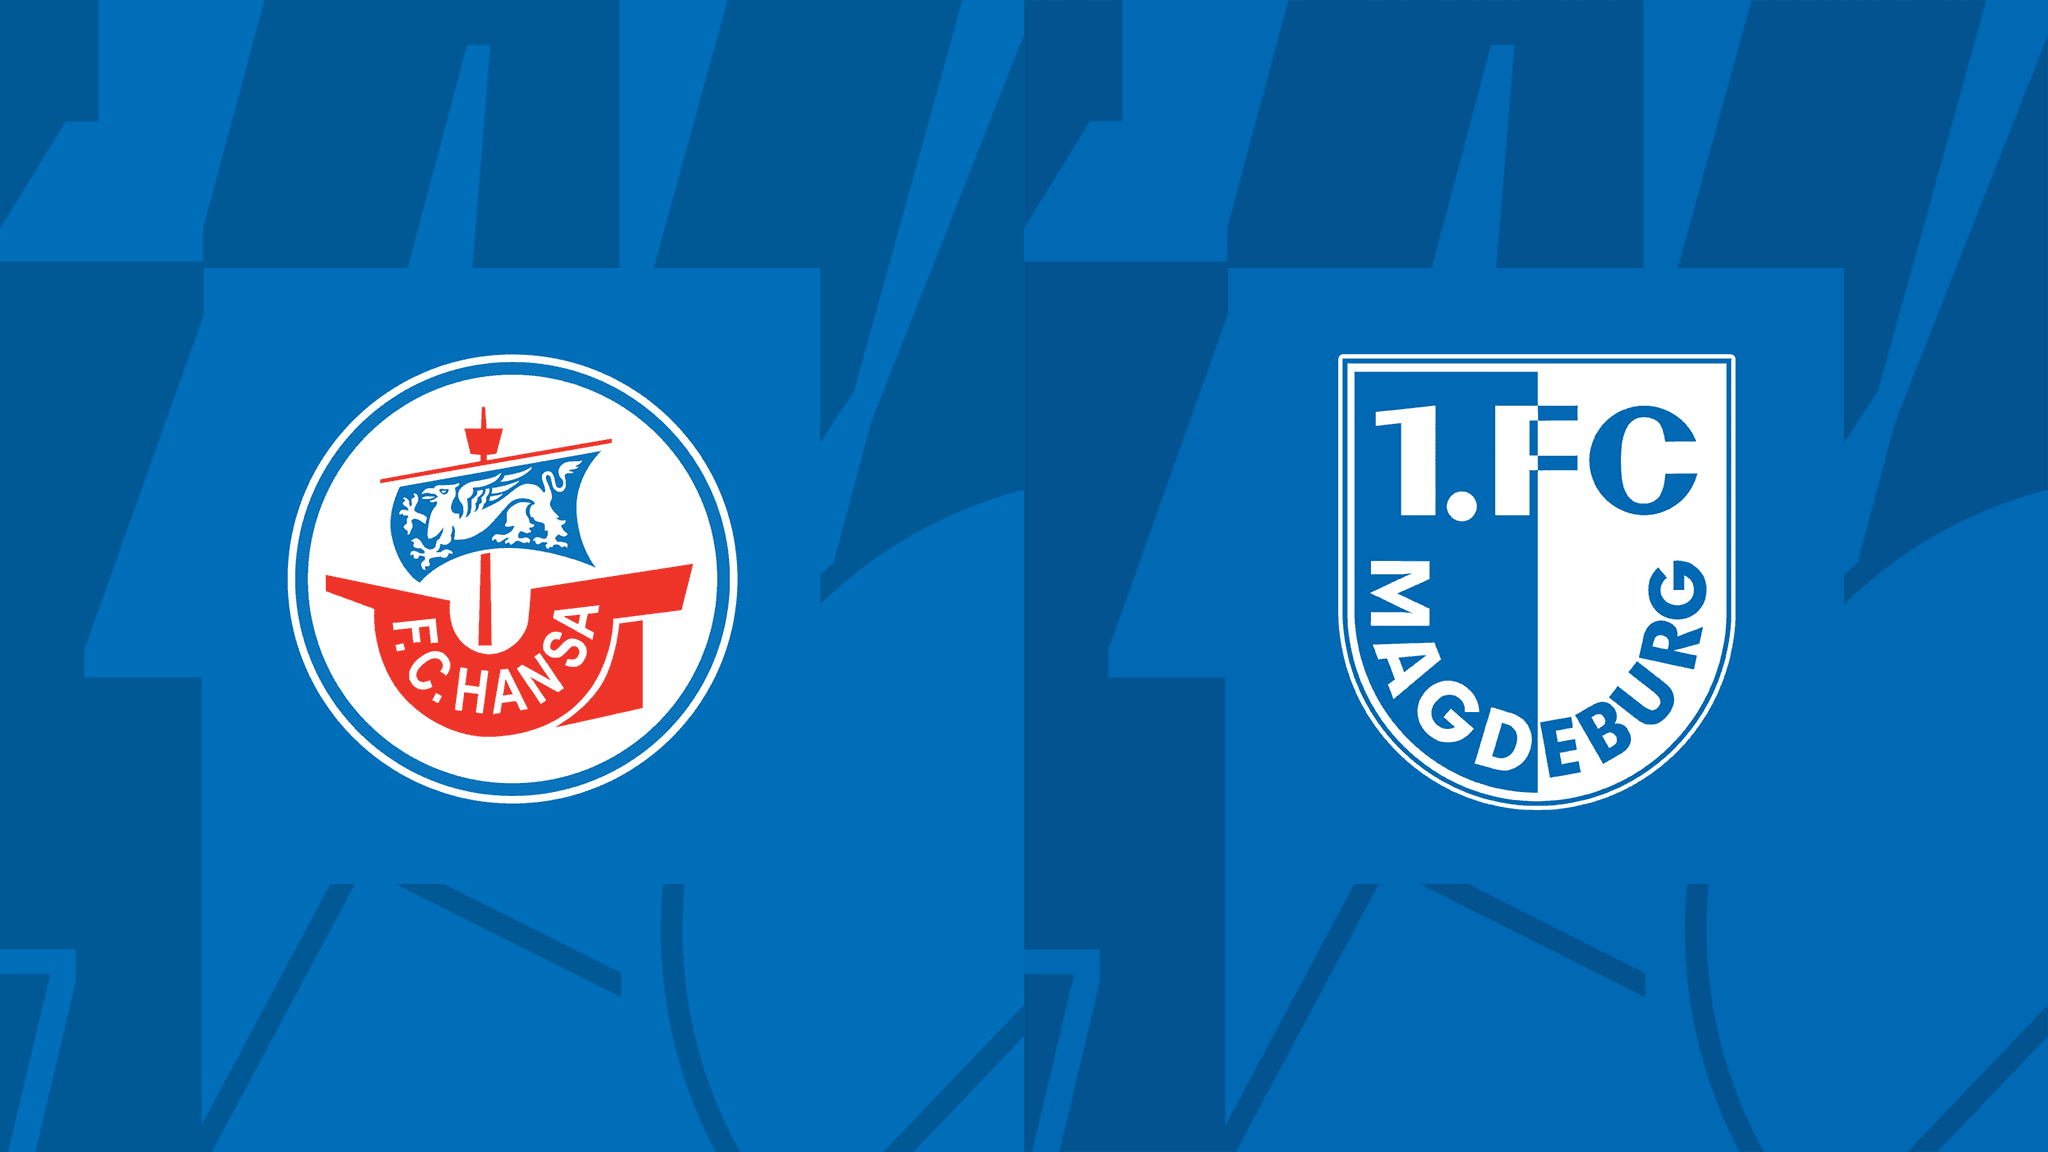 Hansa Rostock vs Magdeburg